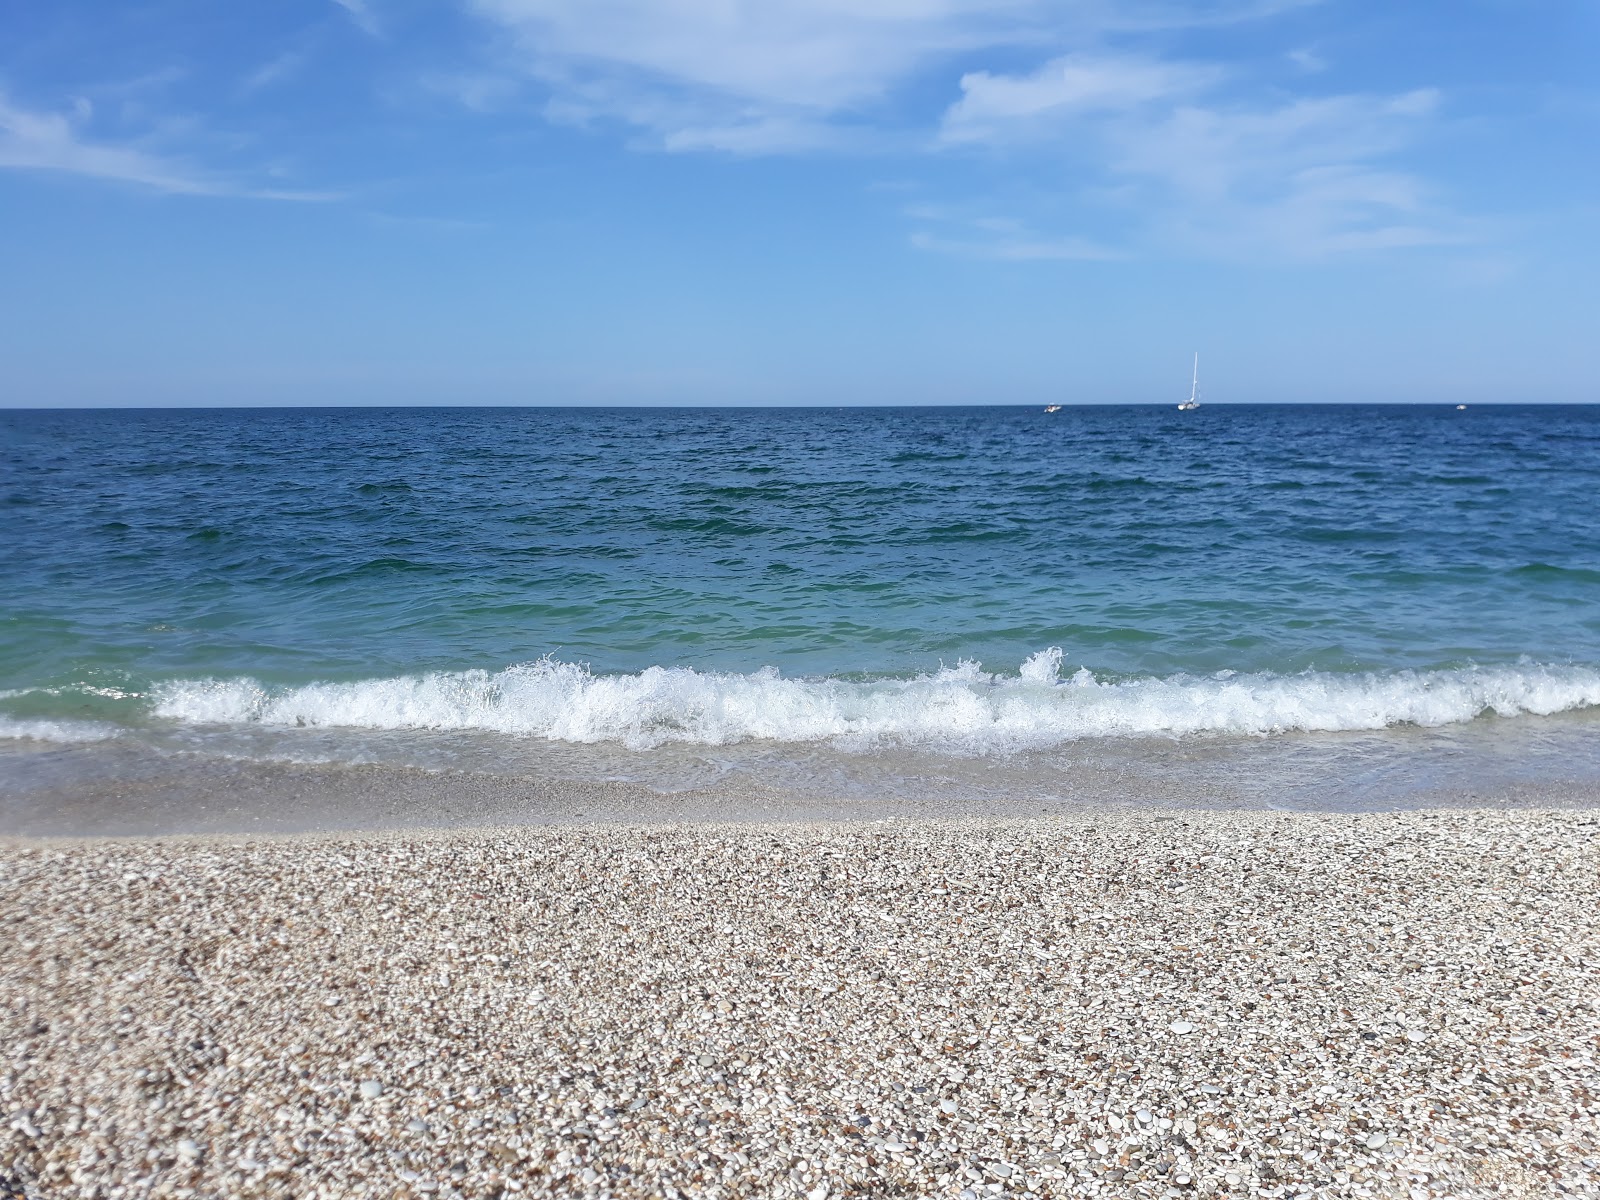 Valokuva Spiaggia Mezzavalleista. sijaitsee luonnonalueella